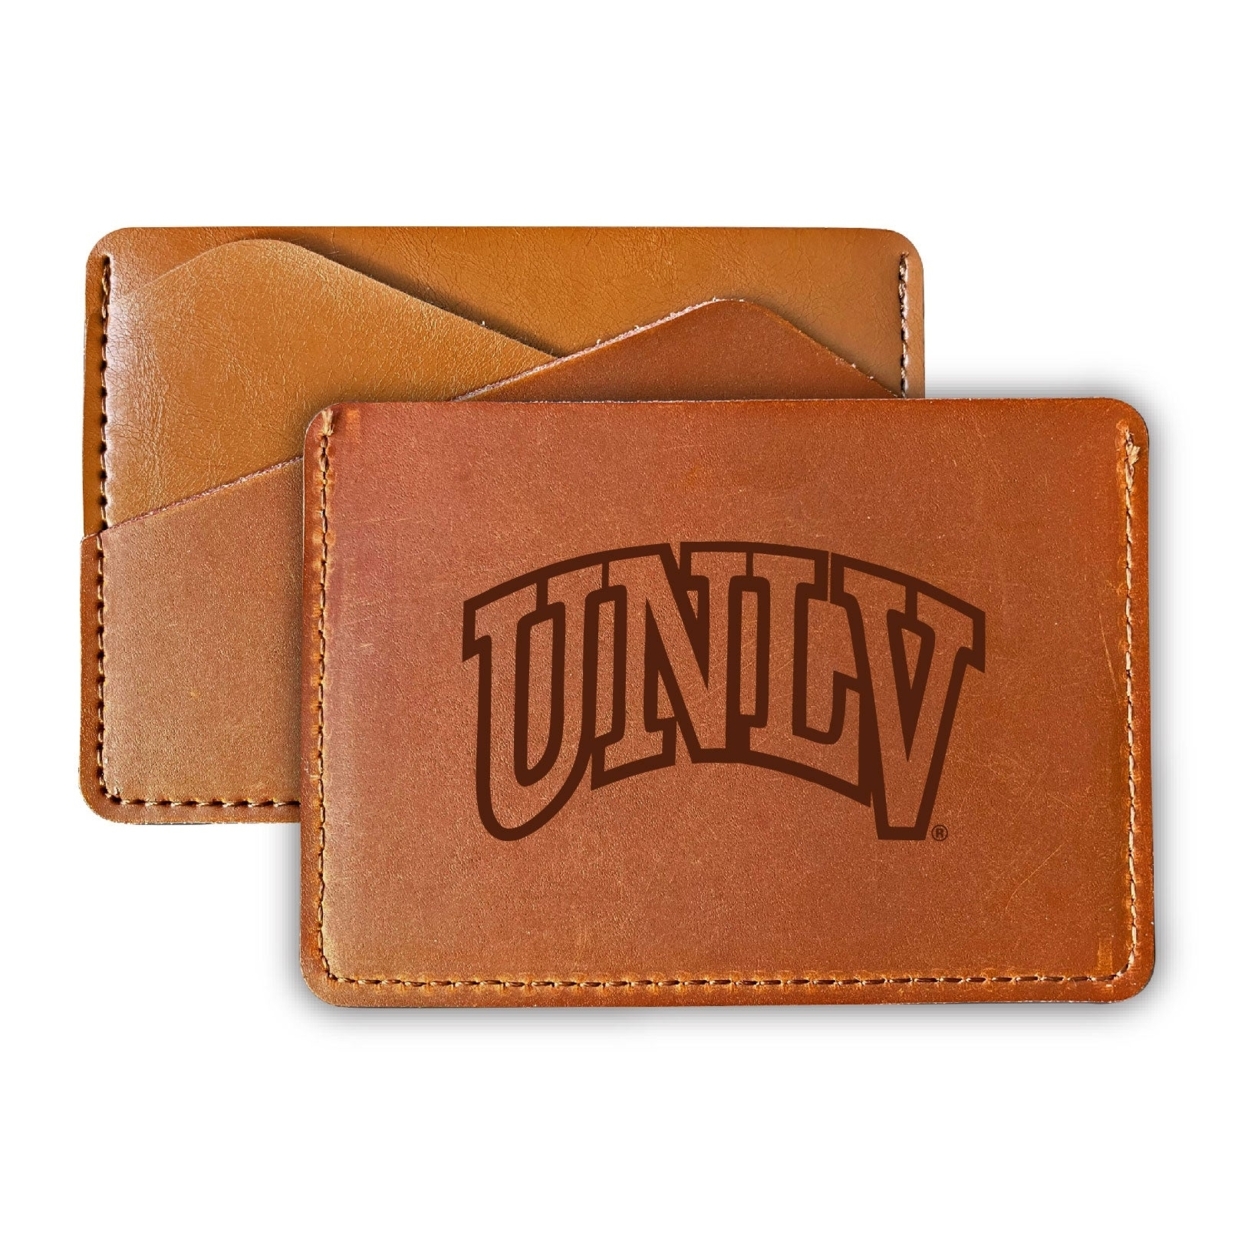 UNLV Rebels College Leather Card Holder Wallet